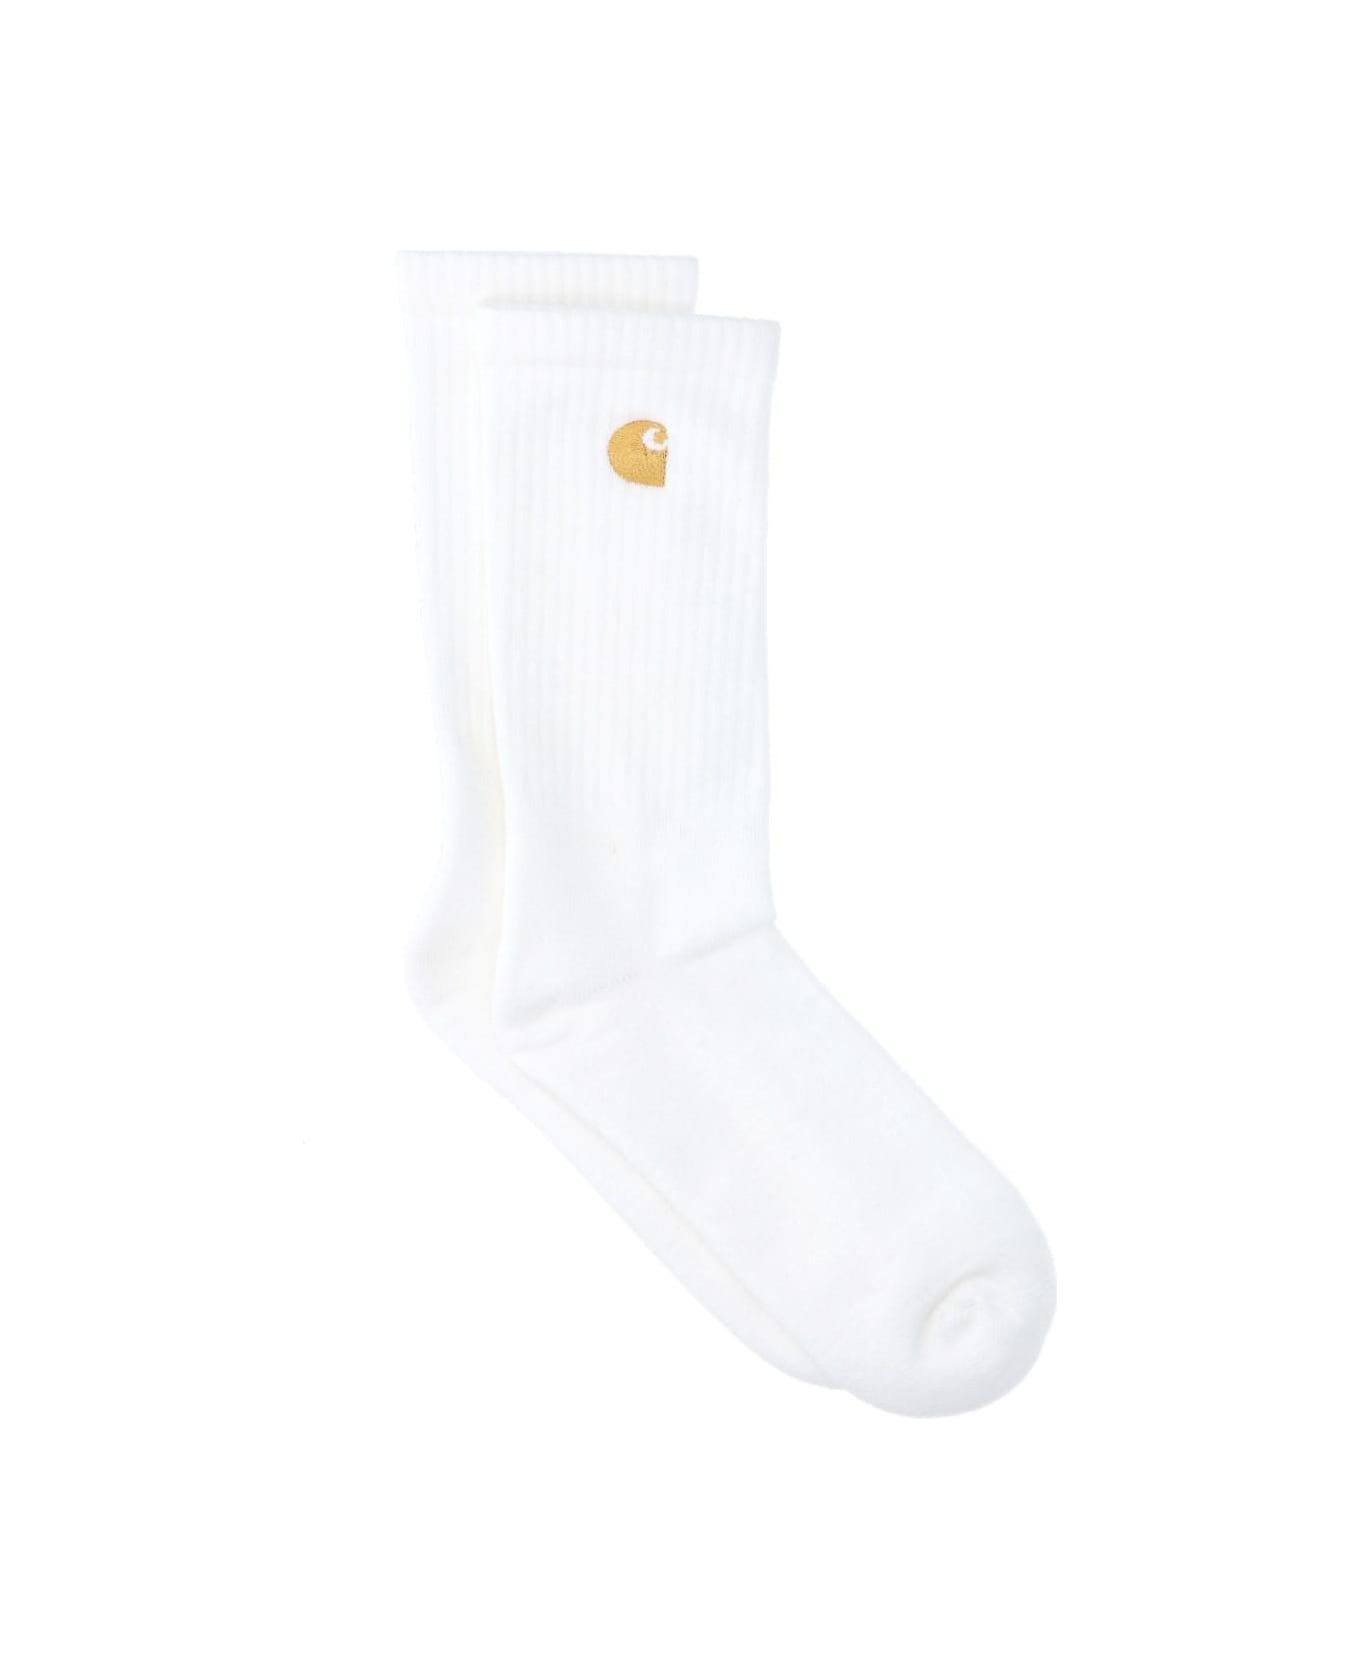 Carhartt Logo Socks - Bianco/oro 靴下